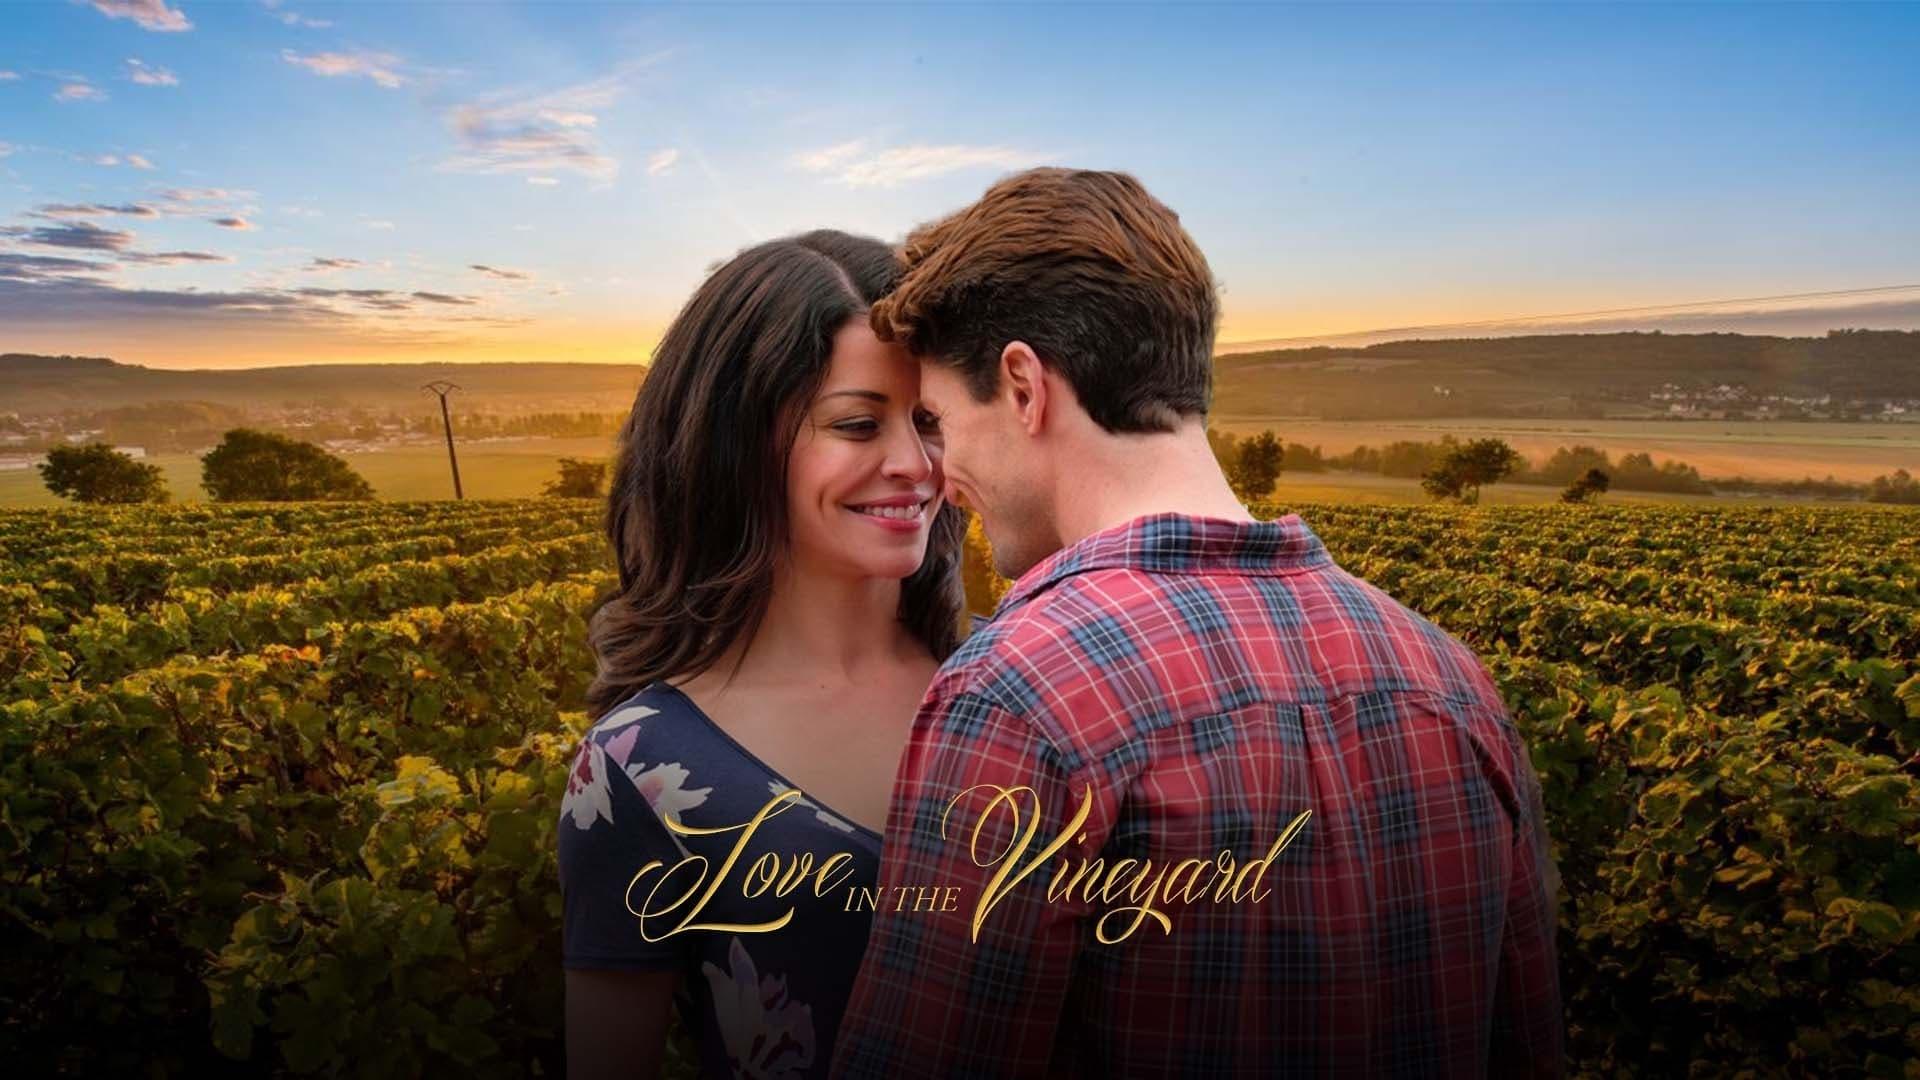 Love in the Vineyard backdrop